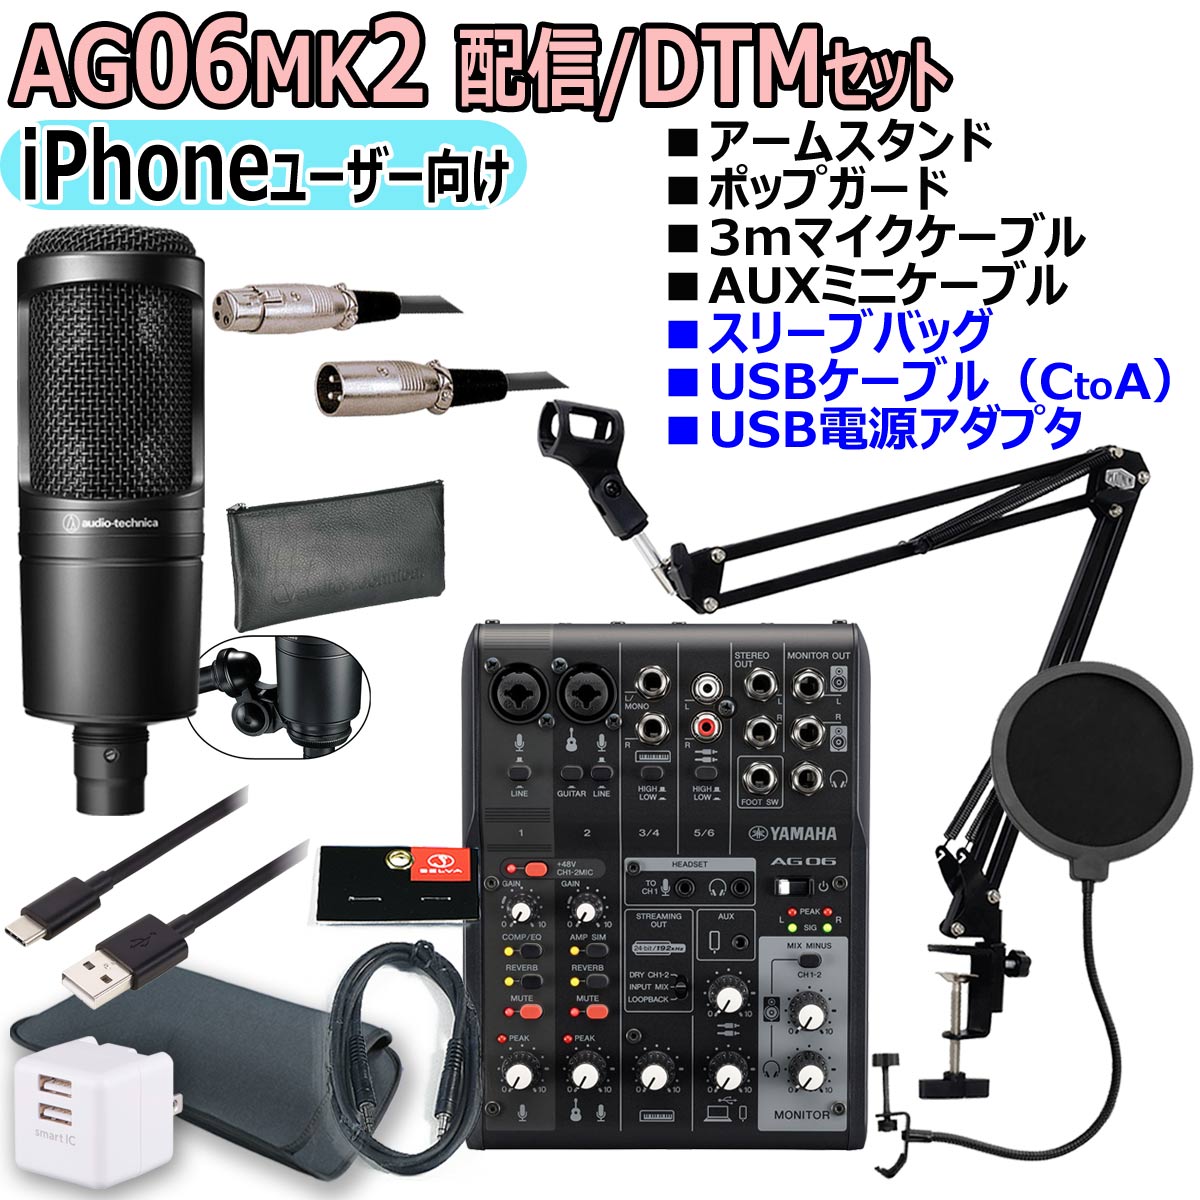 【あす楽対象商品】YAMAHA / AG06MK2 BLACK AT2020 iPhoneユーザー向け 配信/DTMセット【PNG】